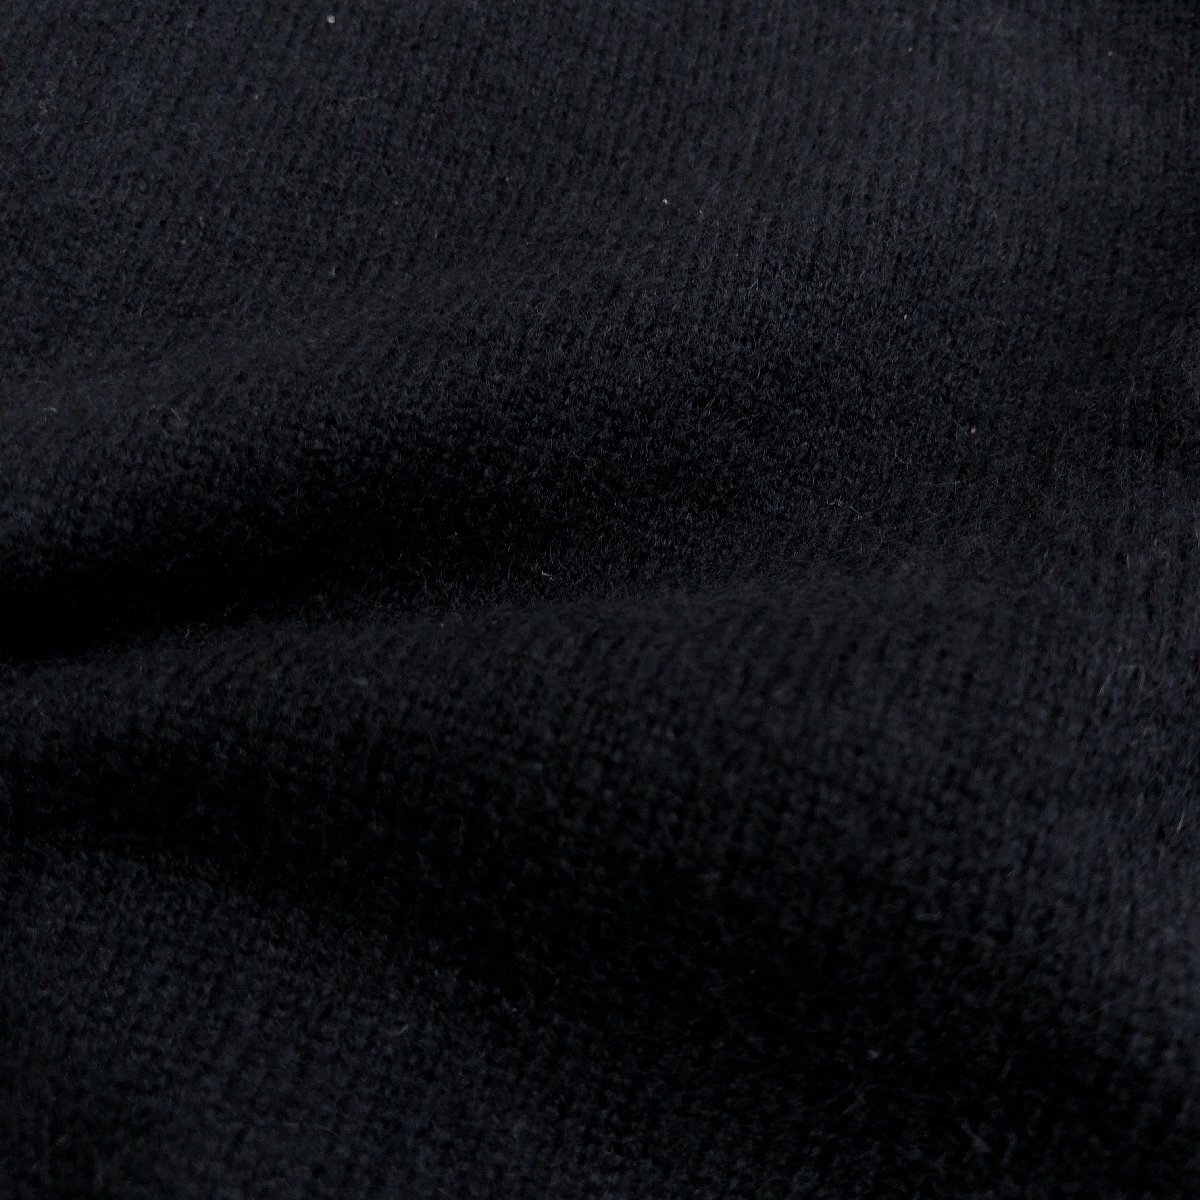 Spick&Span スピック&スパン 《繊維の宝石》上質 カシミヤ100% ニット セーター F 黒 ブラック 七分袖 国内正規品 レディース カシミア_画像6